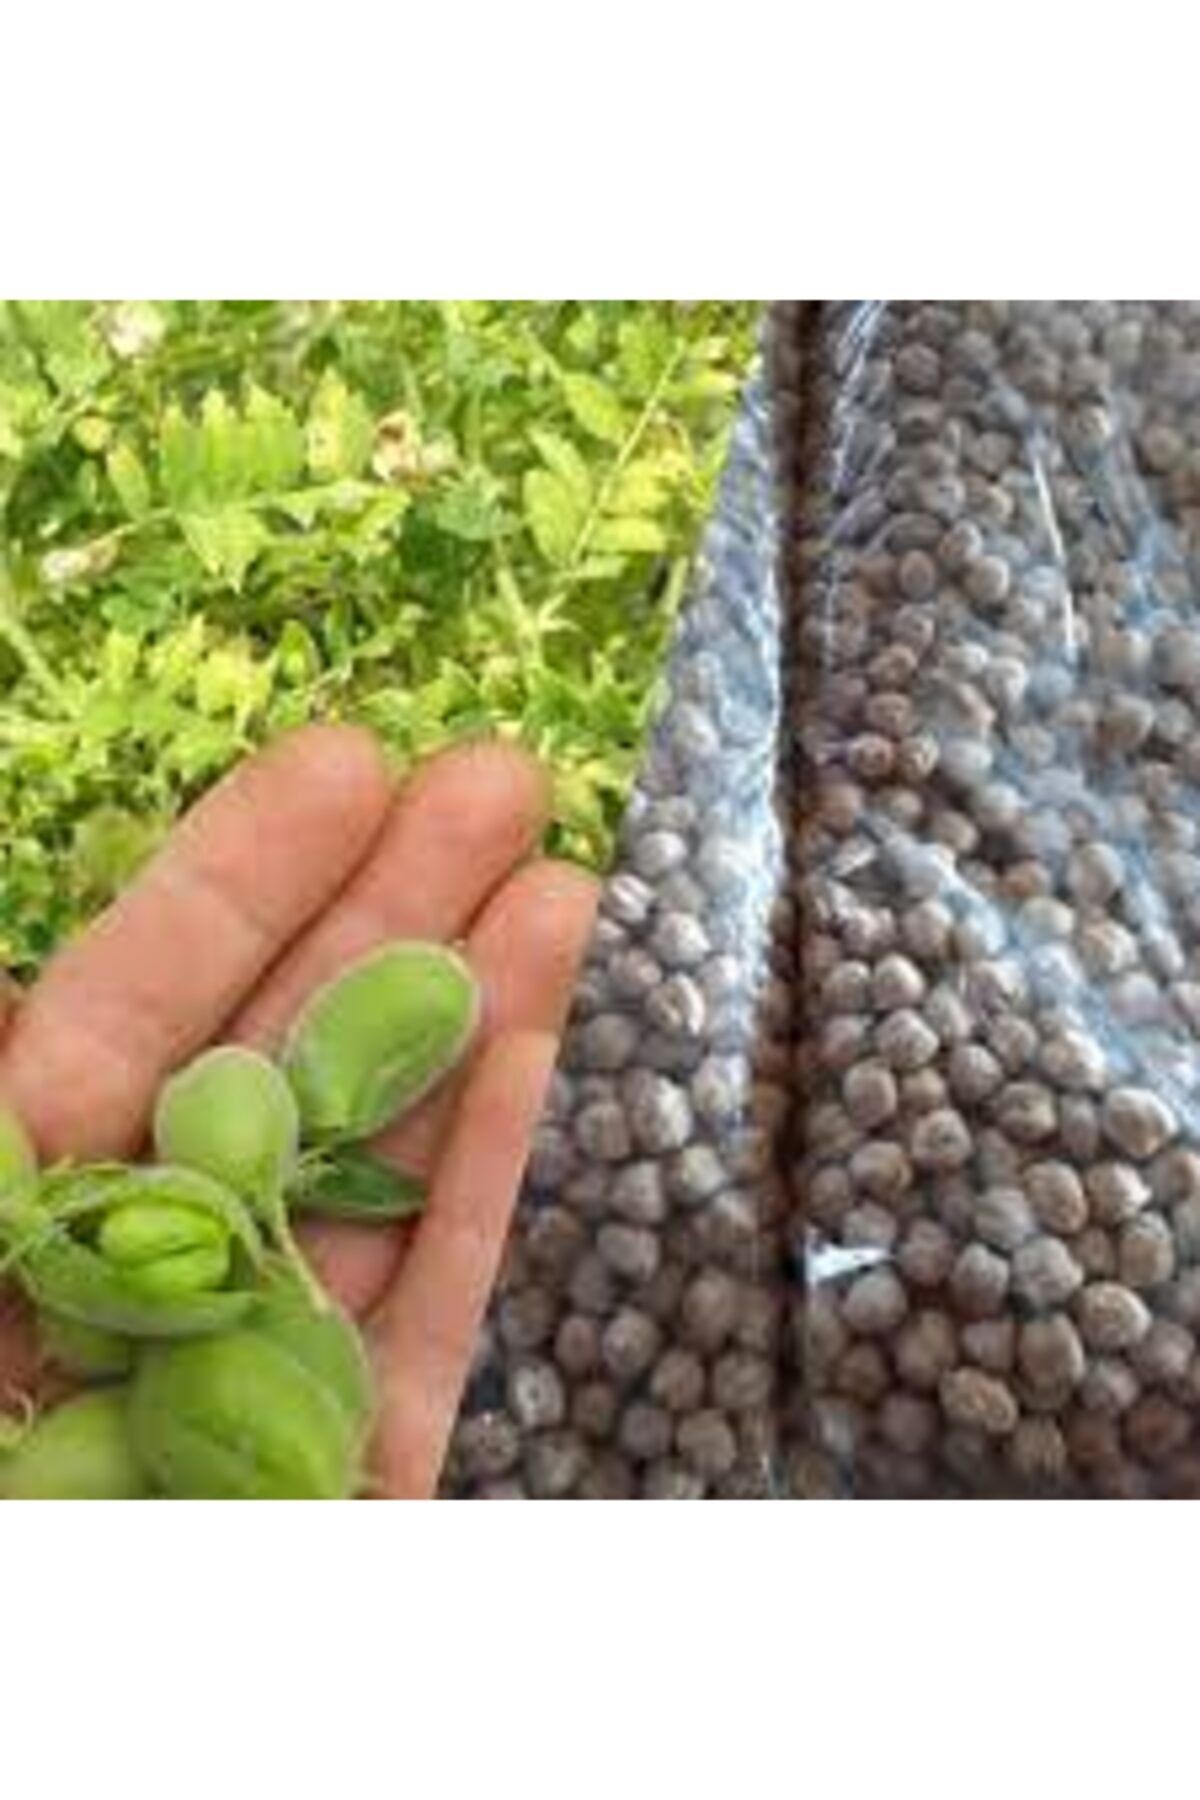 Köy Tohumları 150 Adet Tohum Eko Paket Yeni Mahsül Geleneksel Nohut Tohumu Bol Verim Sürpriz Hediye Tohumla Gelir